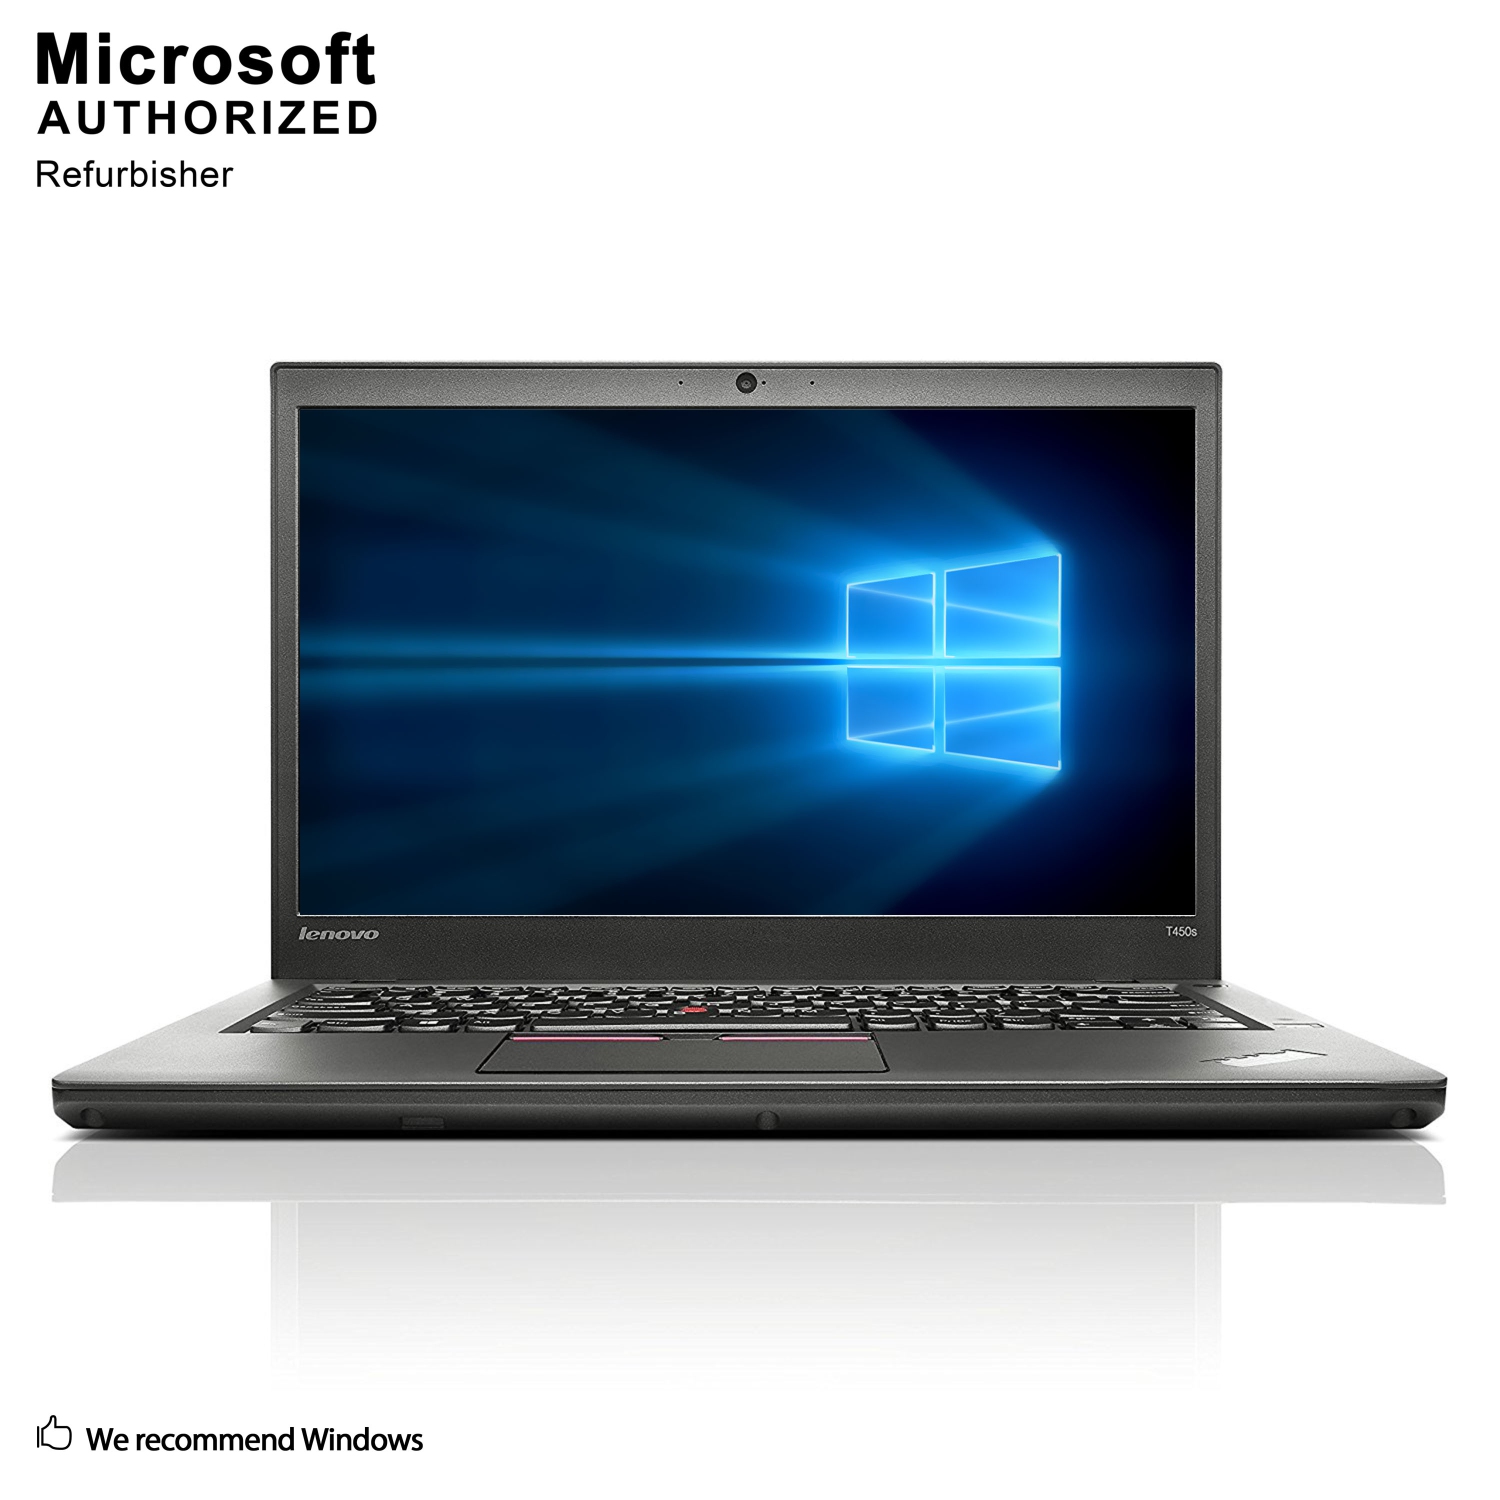 Refurbished (Excellent) - Lenovo ThinkPad T450s 14" Laptop, Intel Core i5 5300U up to 2.9G, 12GB DDR3L RAM, 1TB HDD, Windows 10 Home 64-Bit (EN/FR/ES)